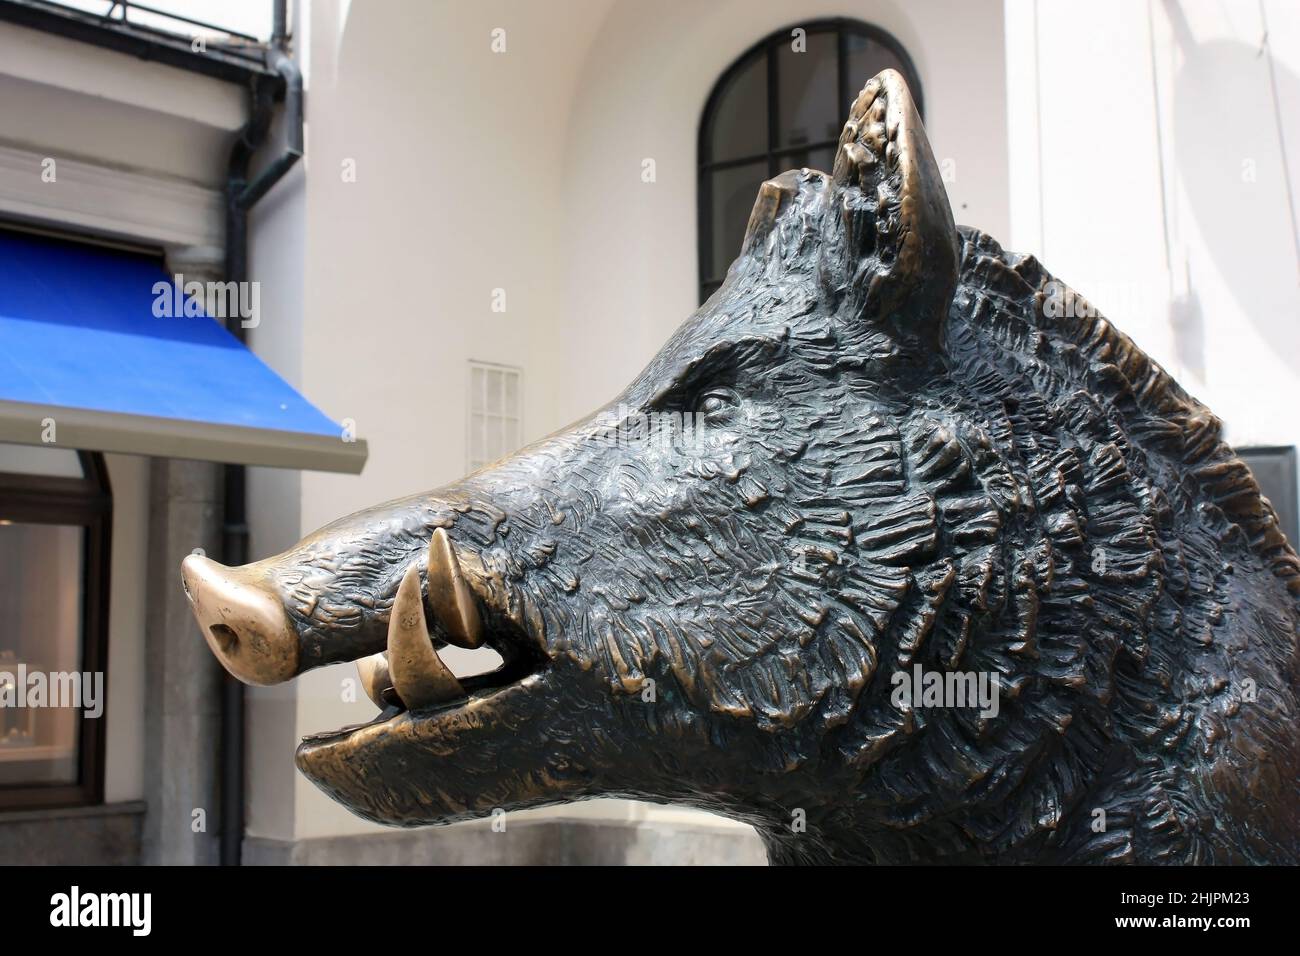 München, Deutschland - Juli 9,2018: Die Bronzefigur eines Wildschweins im Museum für Jagd und Fischerei in München ist ein Bronzetier.die Tradition der Touristen Stockfoto